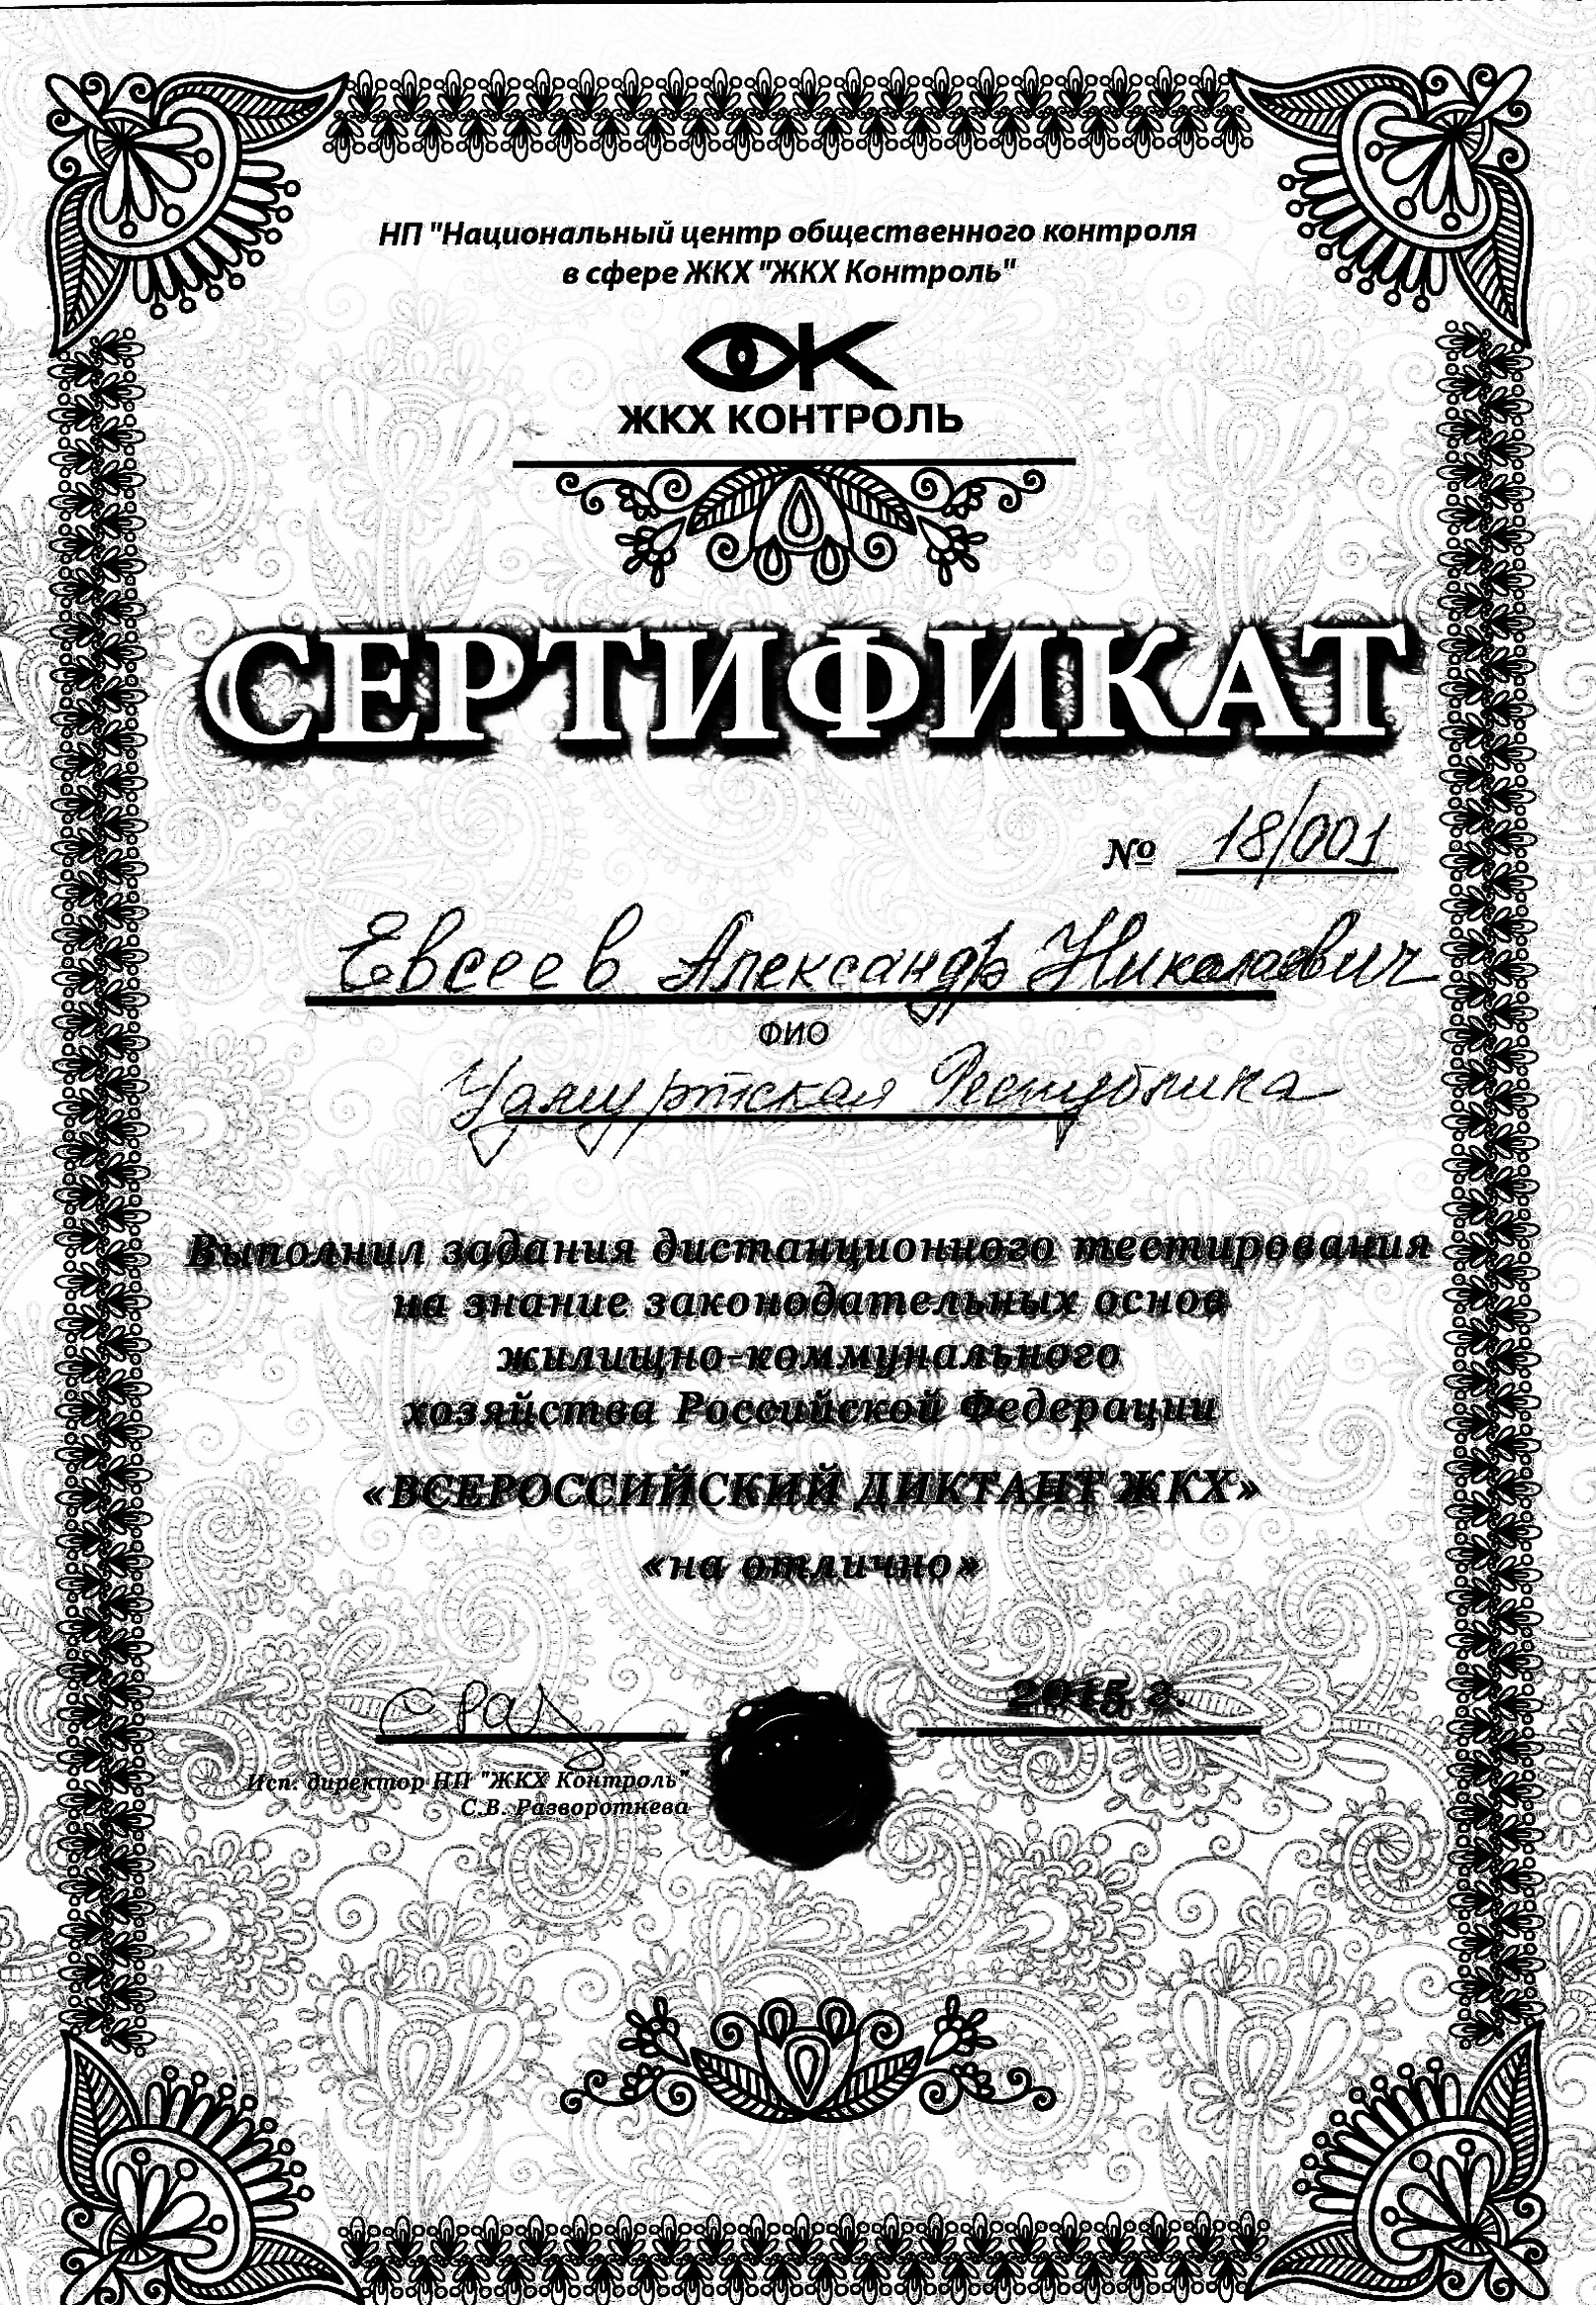 Сертификат Диктант ЖКХ-1